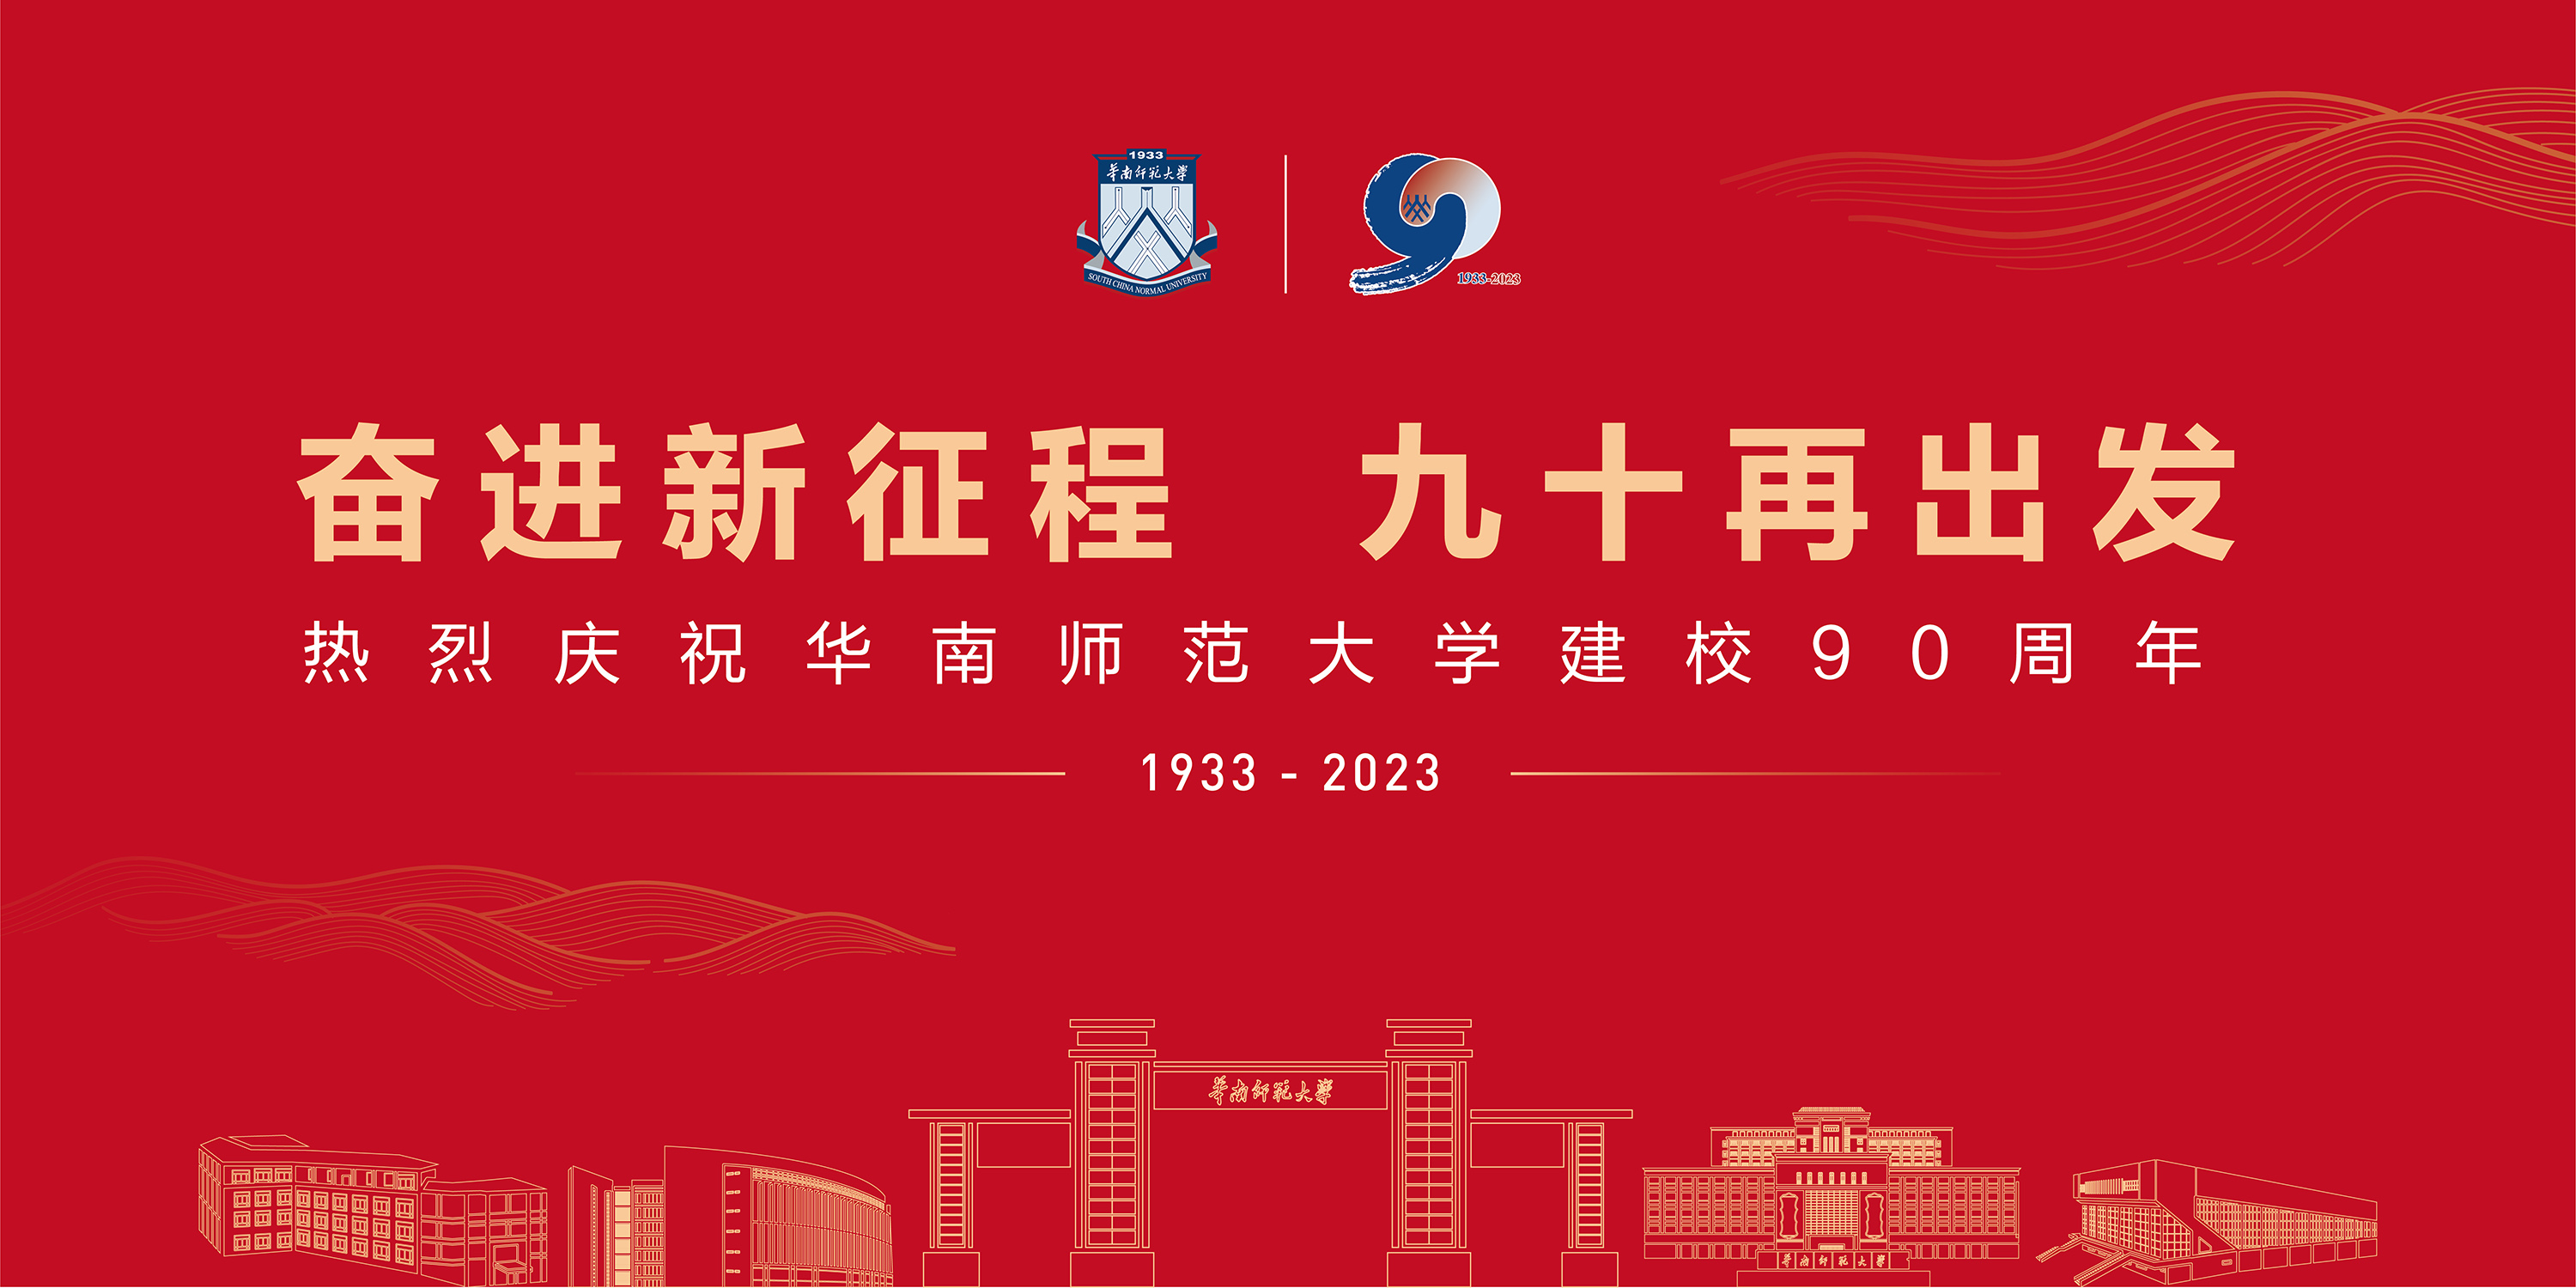 热烈庆祝华南师范大学建校90周年